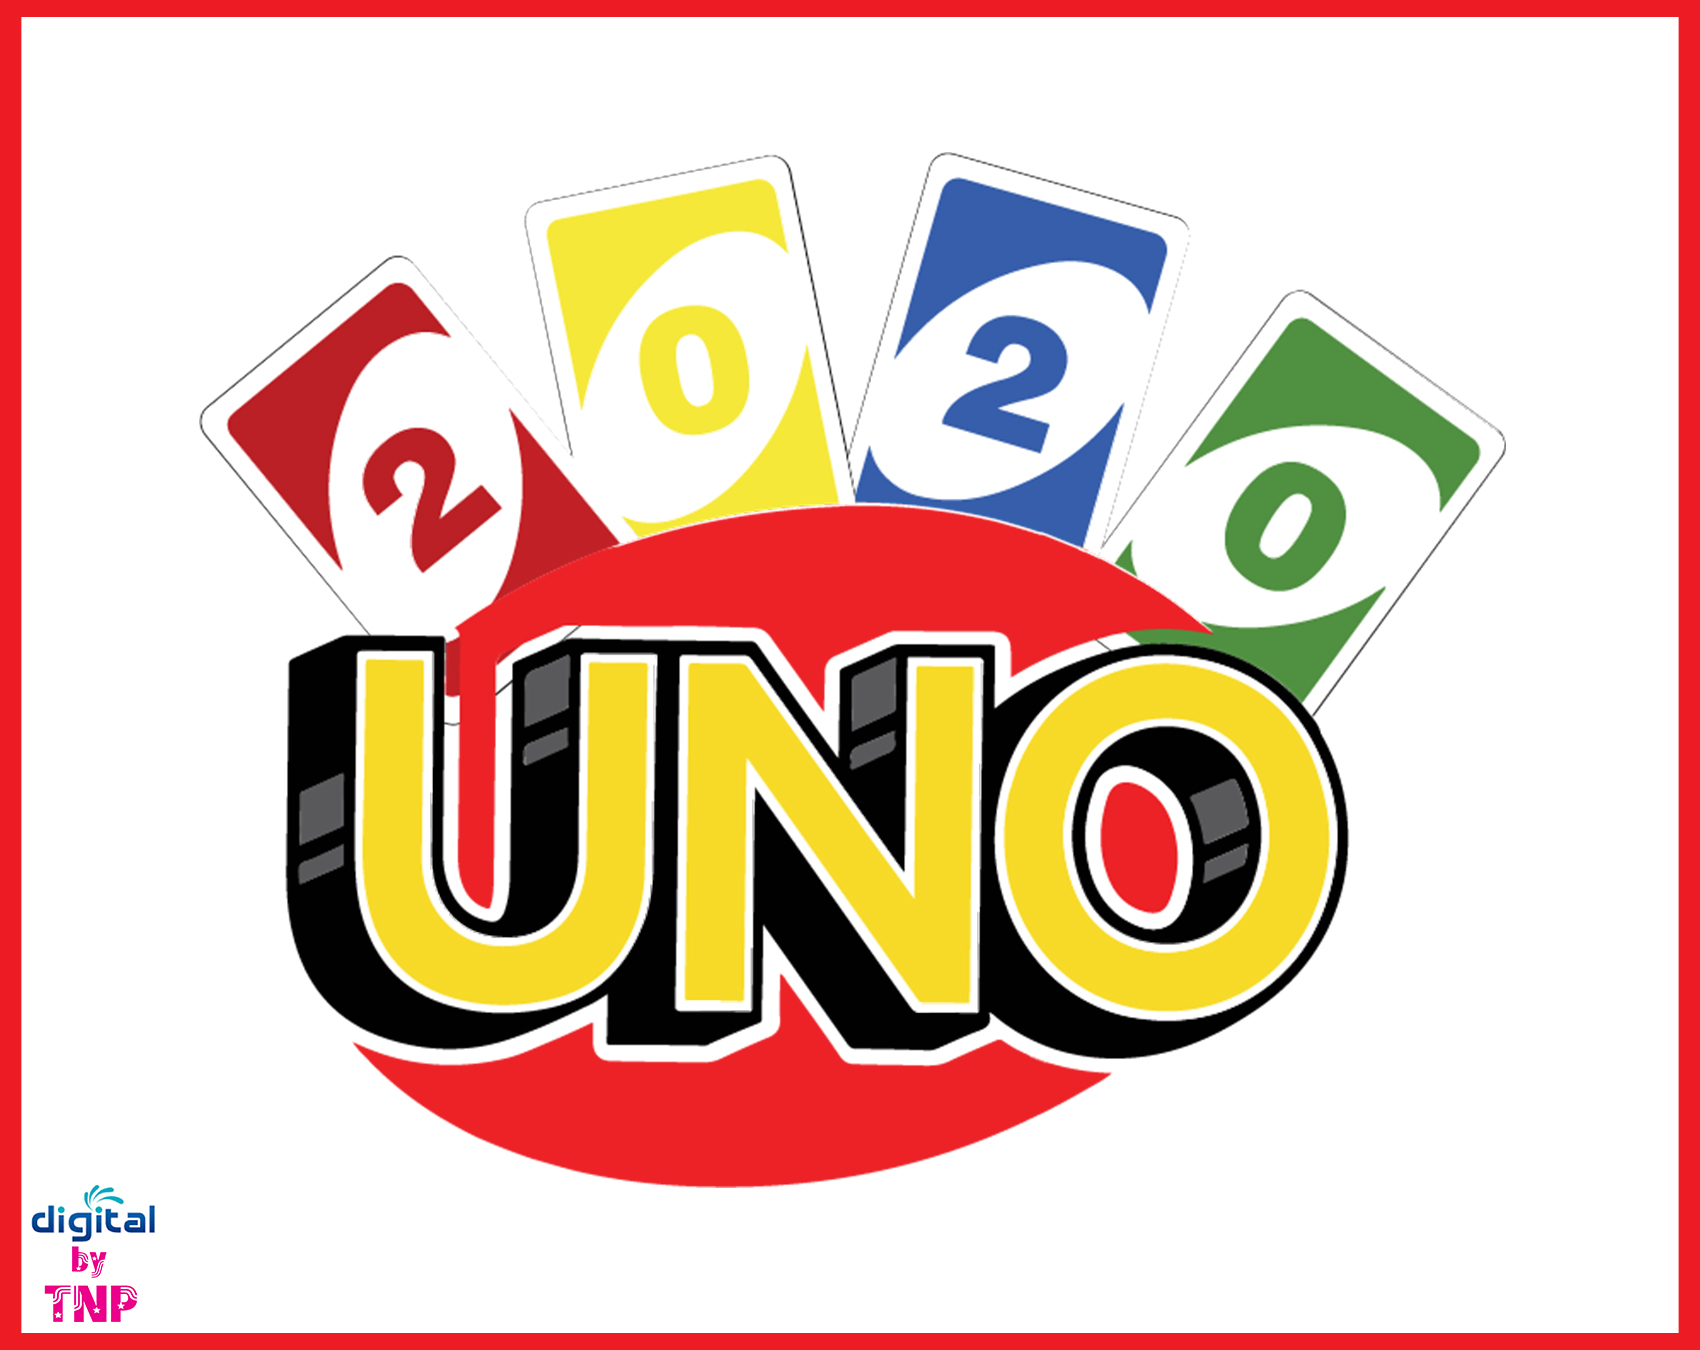 Download DRUNK UNO SVG, Uno svg, uno Birthday, Uno print, Uno Vector, Uno Party, Silhouette, Cricut ...